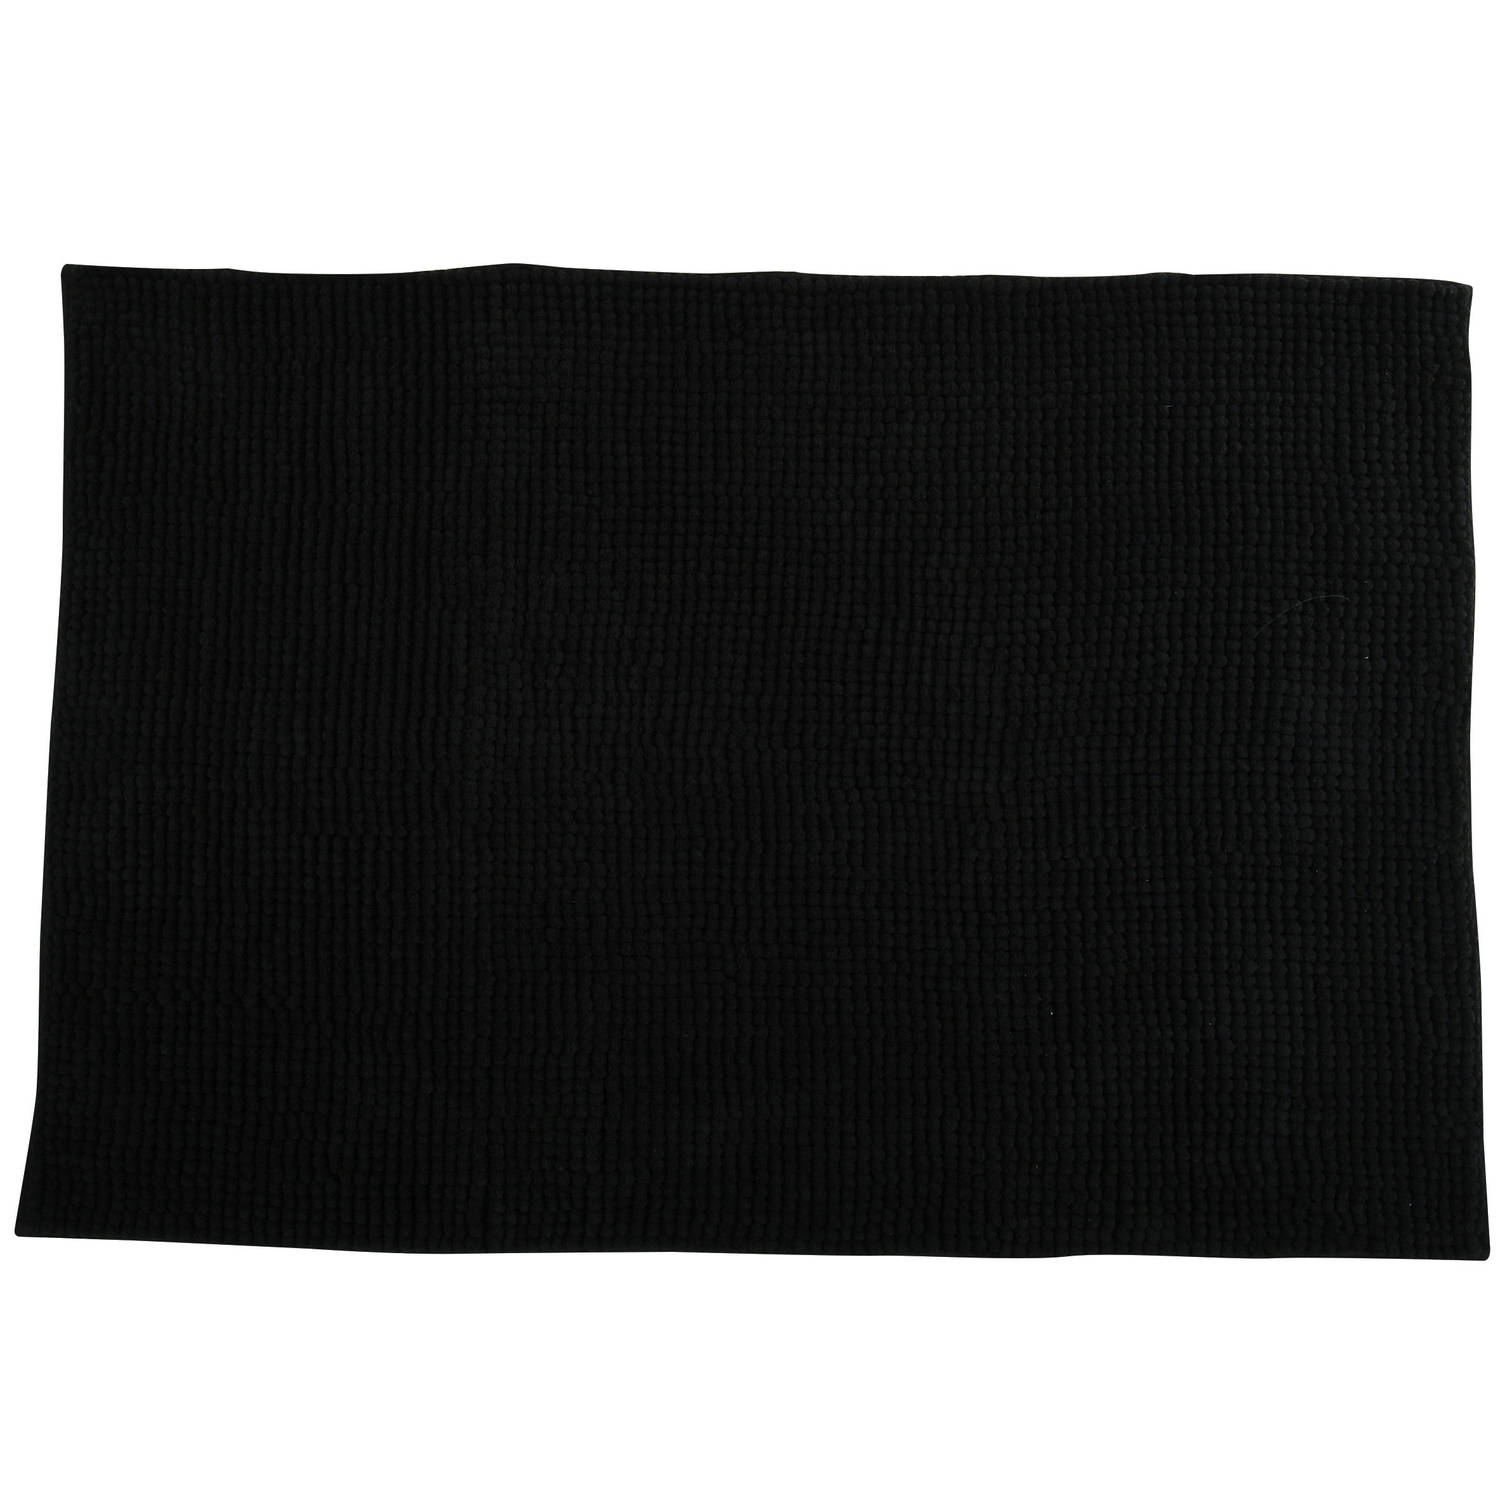 Msv Badkamerkleed-badmat Voor Op De Vloer Zwart 60 X 90 Cm